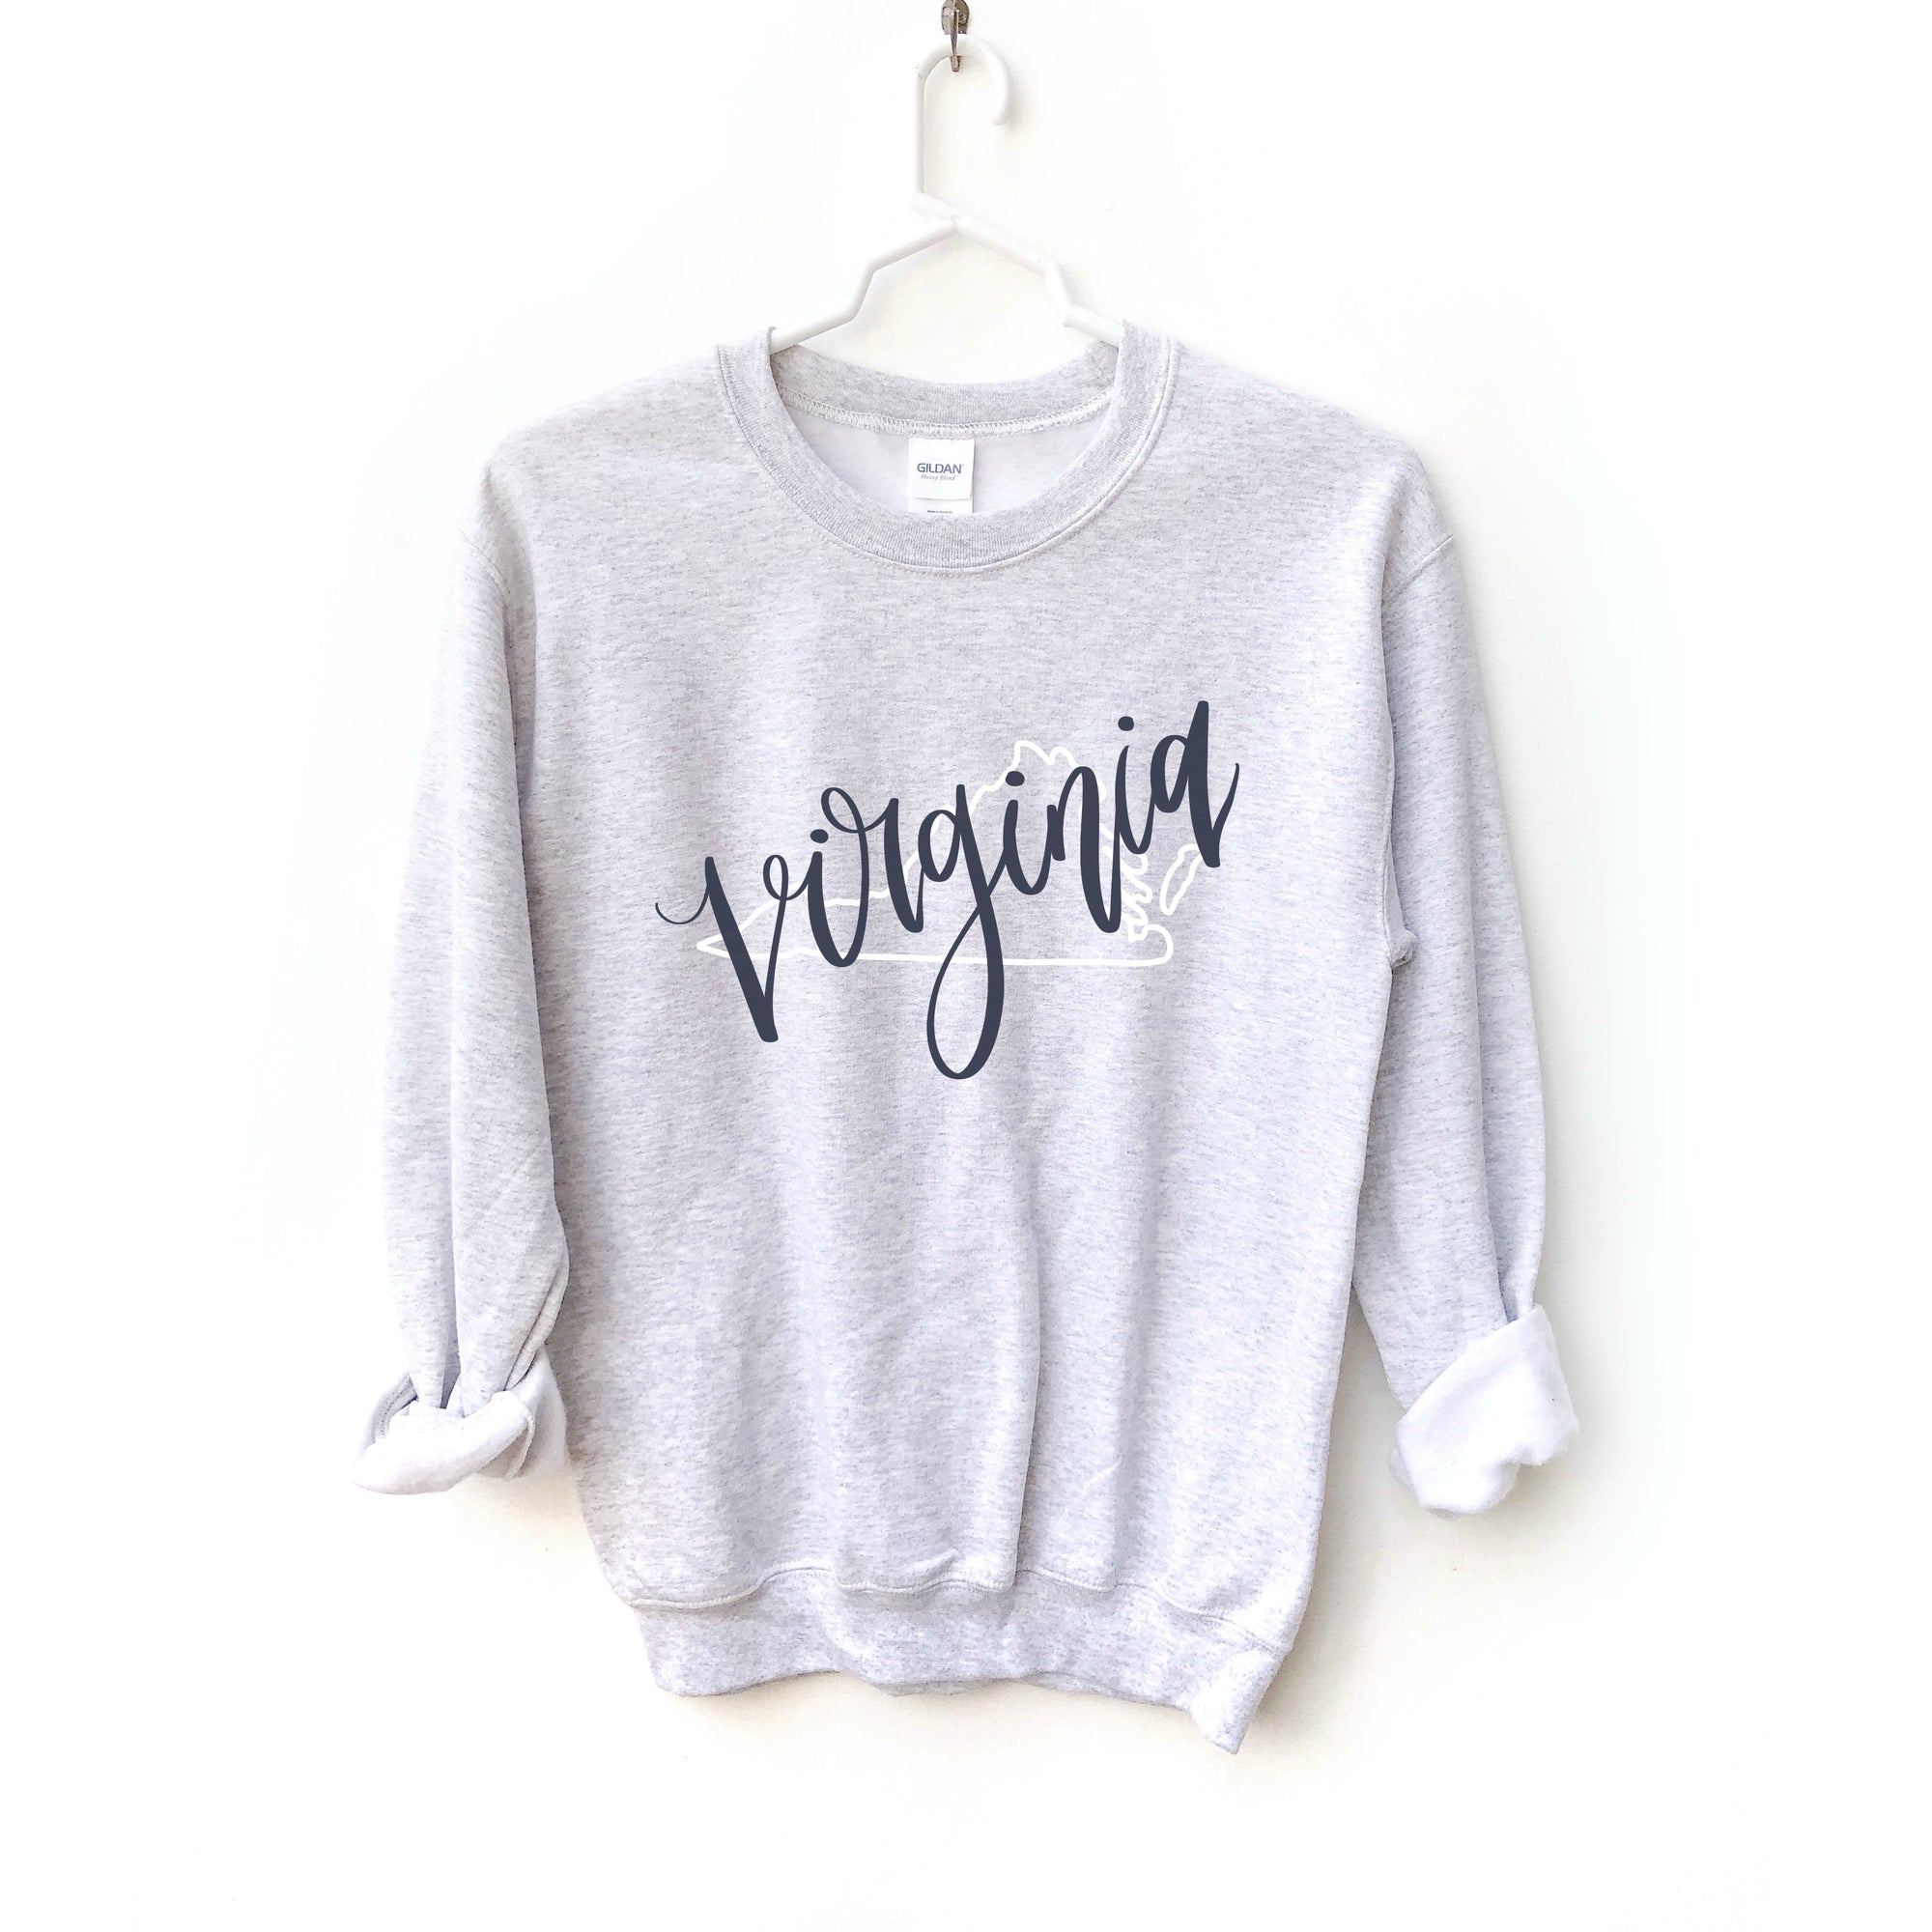 Virginia Crewneck Sweatshirt